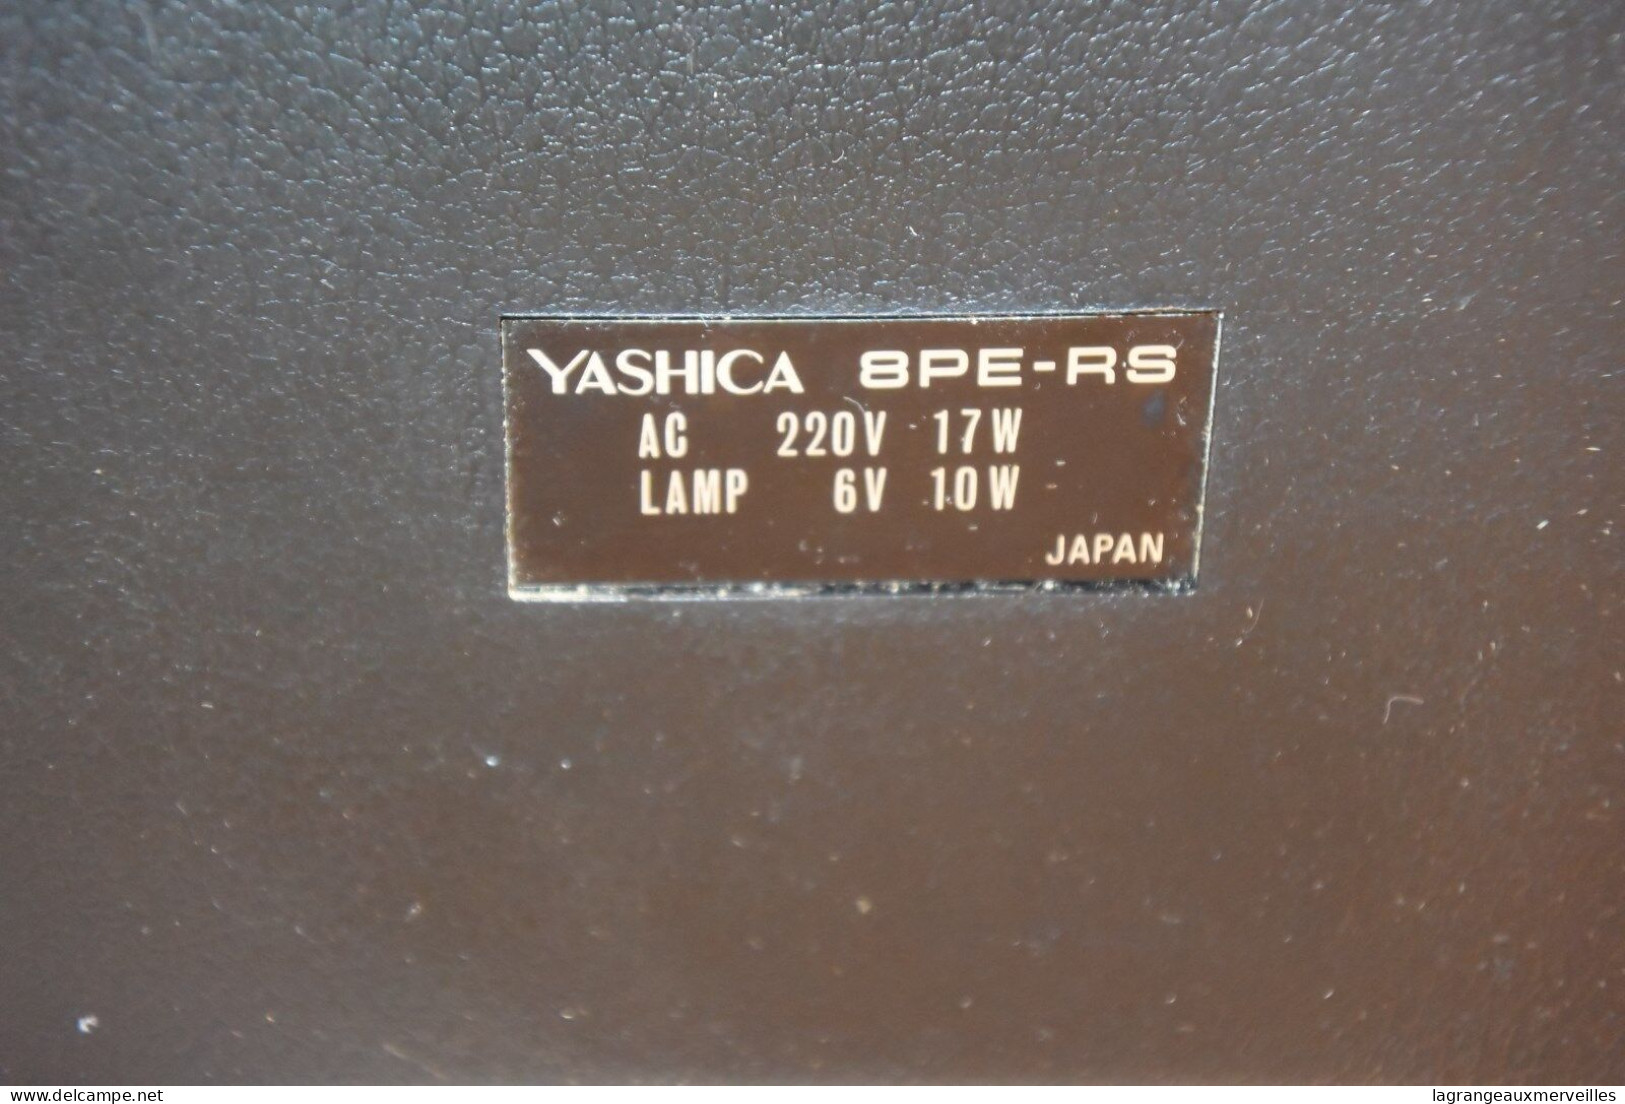 E1 Visionneuse YASHICA 8PE-RS FILM - Autres Appareils